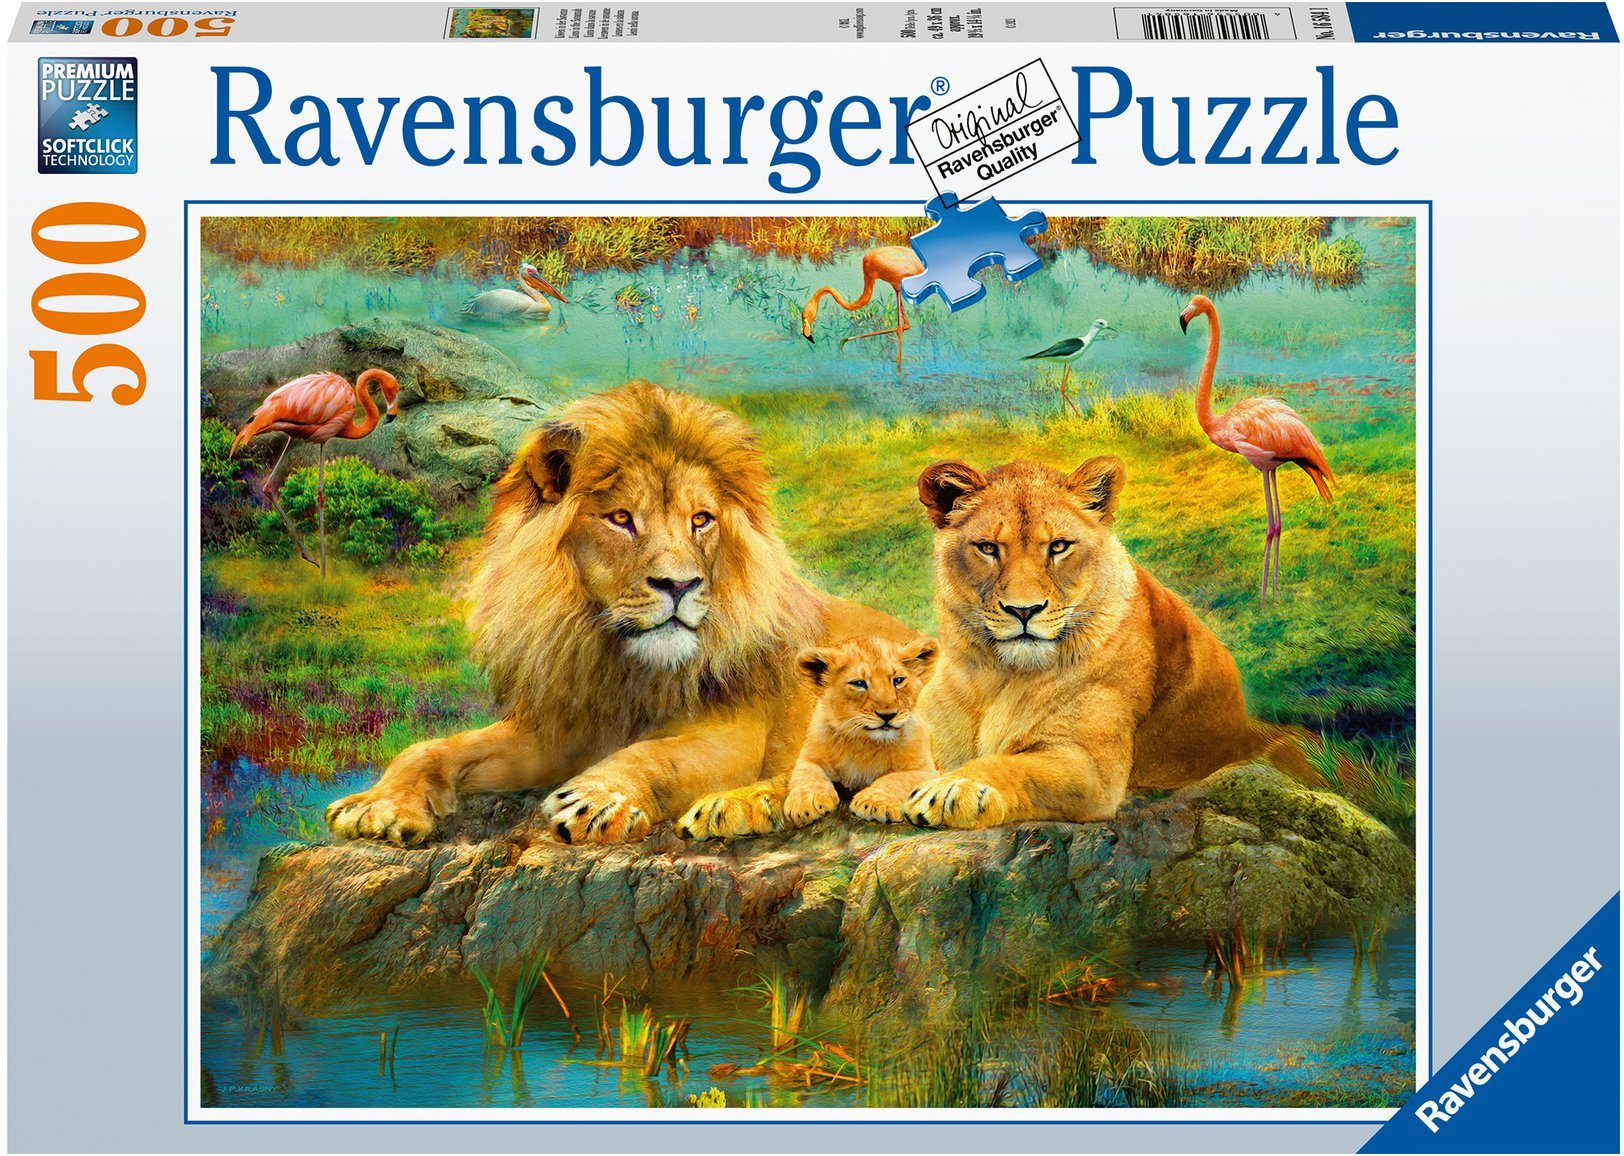 Ravensburger Puzzle Löwen in der Savanne, 500 Puzzleteile, Made in Germany, FSC® - schützt Wald - weltweit